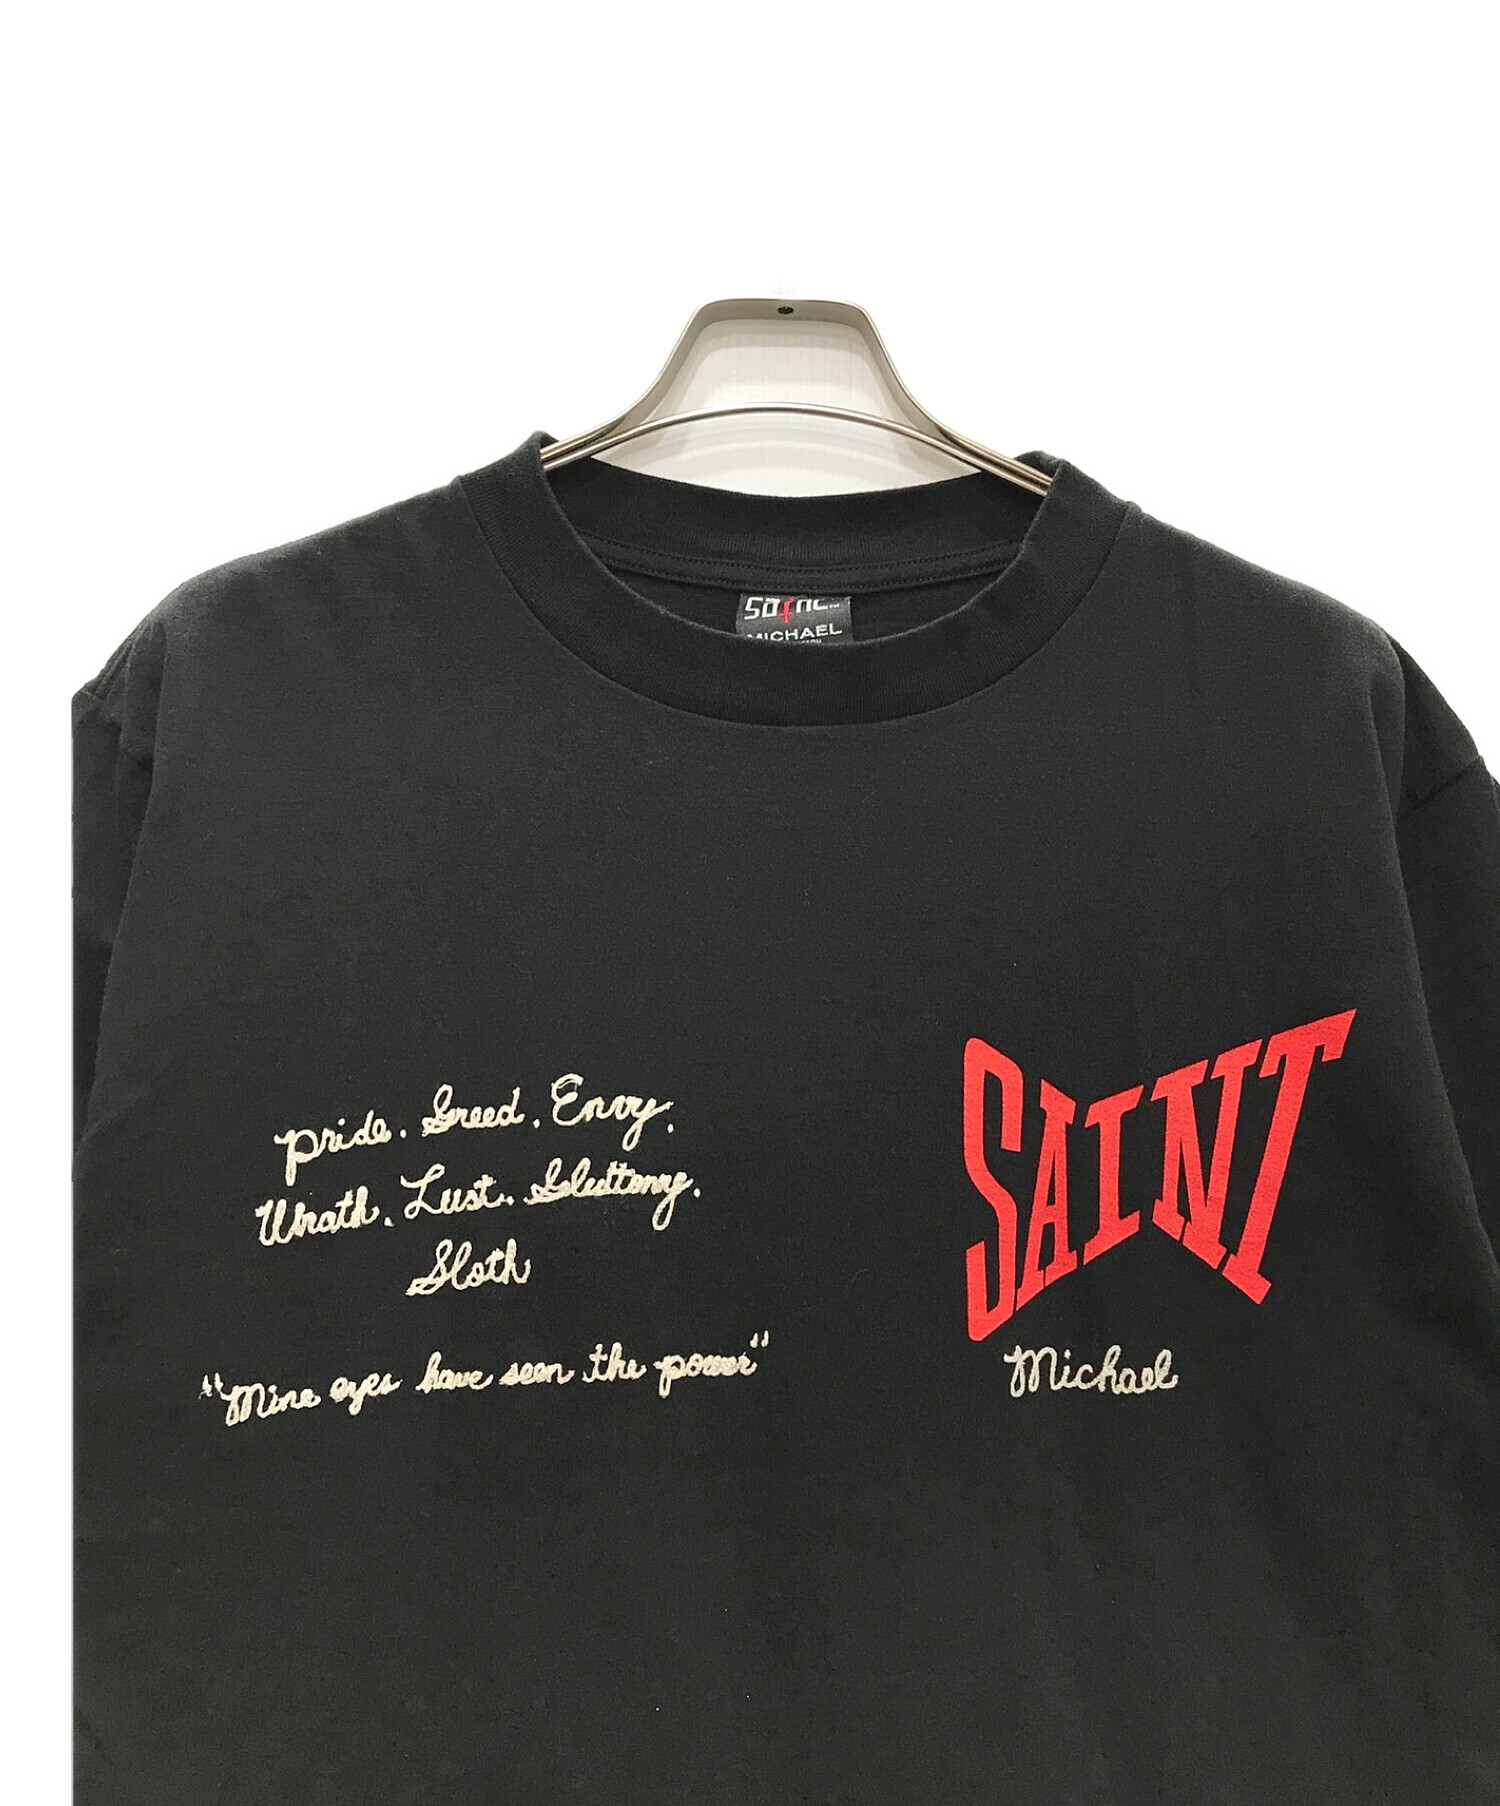 SAINT MICHAEL (セントマイケル) ロゴ ショートスリーブTシャツ ブラック サイズ:L